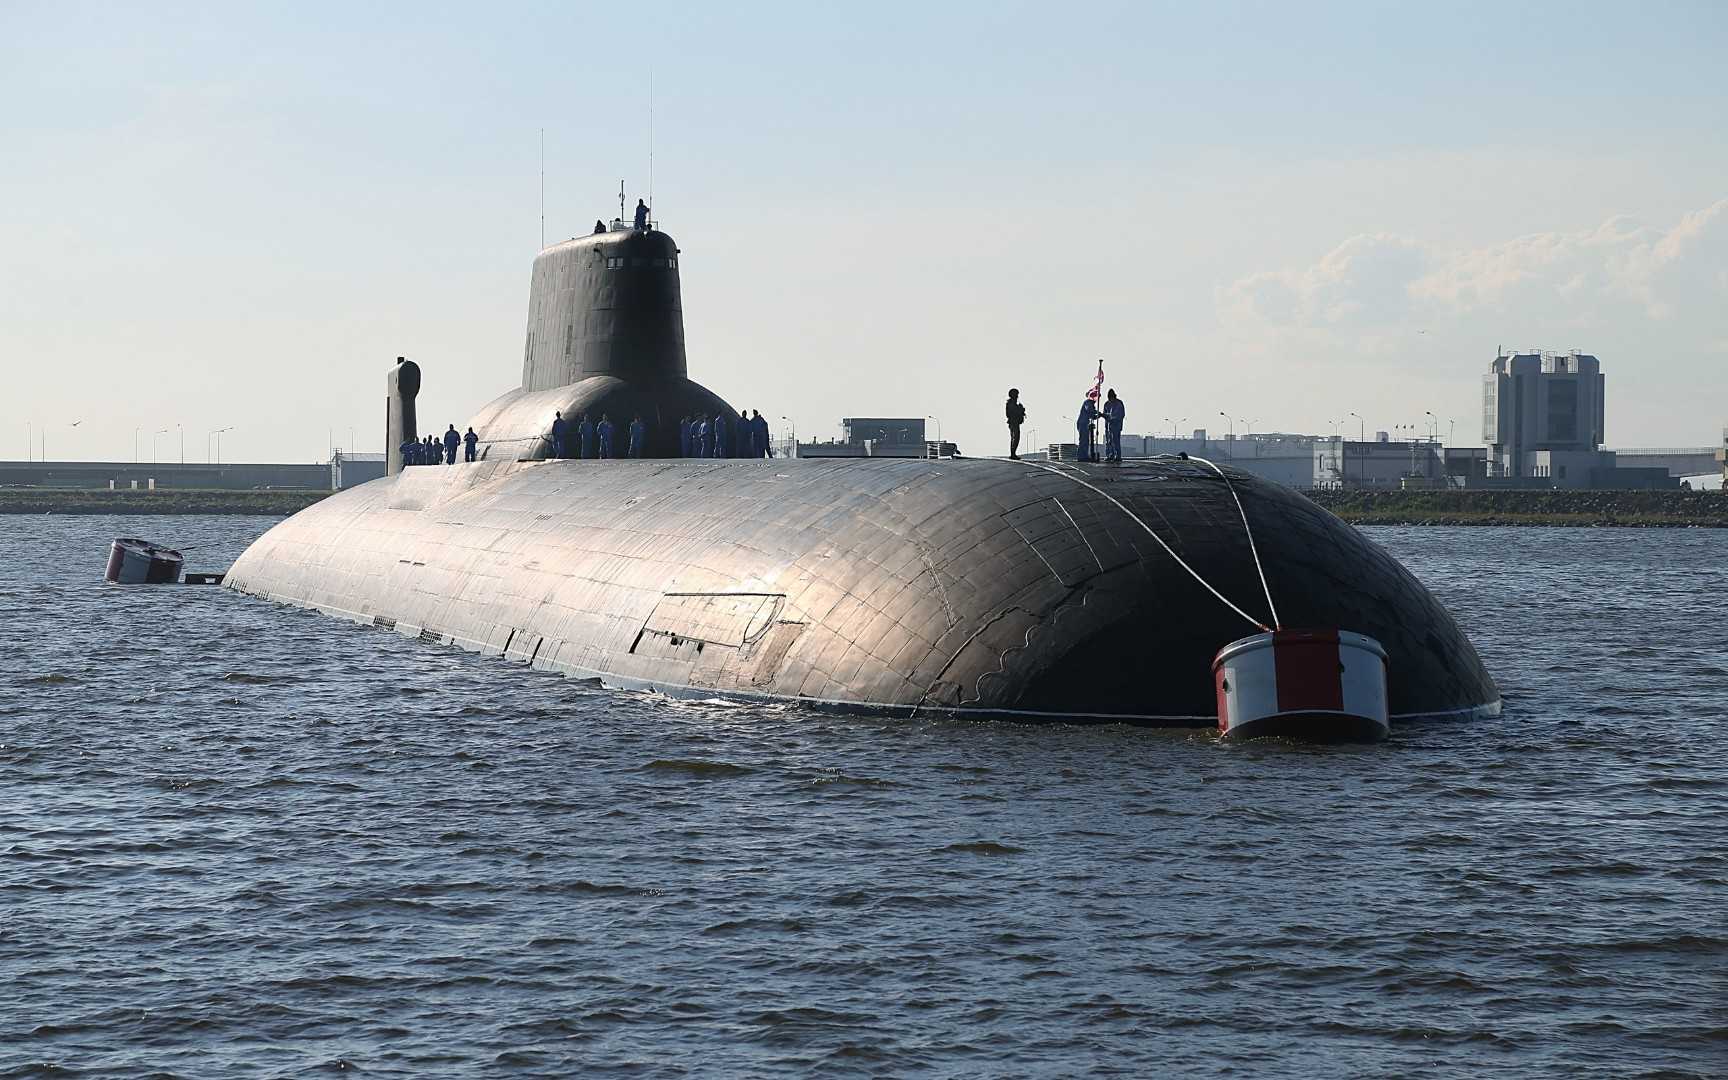 Самые смертоносные обитатели глубин в топ-10 самых больших подводных лодок в мире Рейтинг крупнейших субмарин в мире с указанием размеров и вооружения